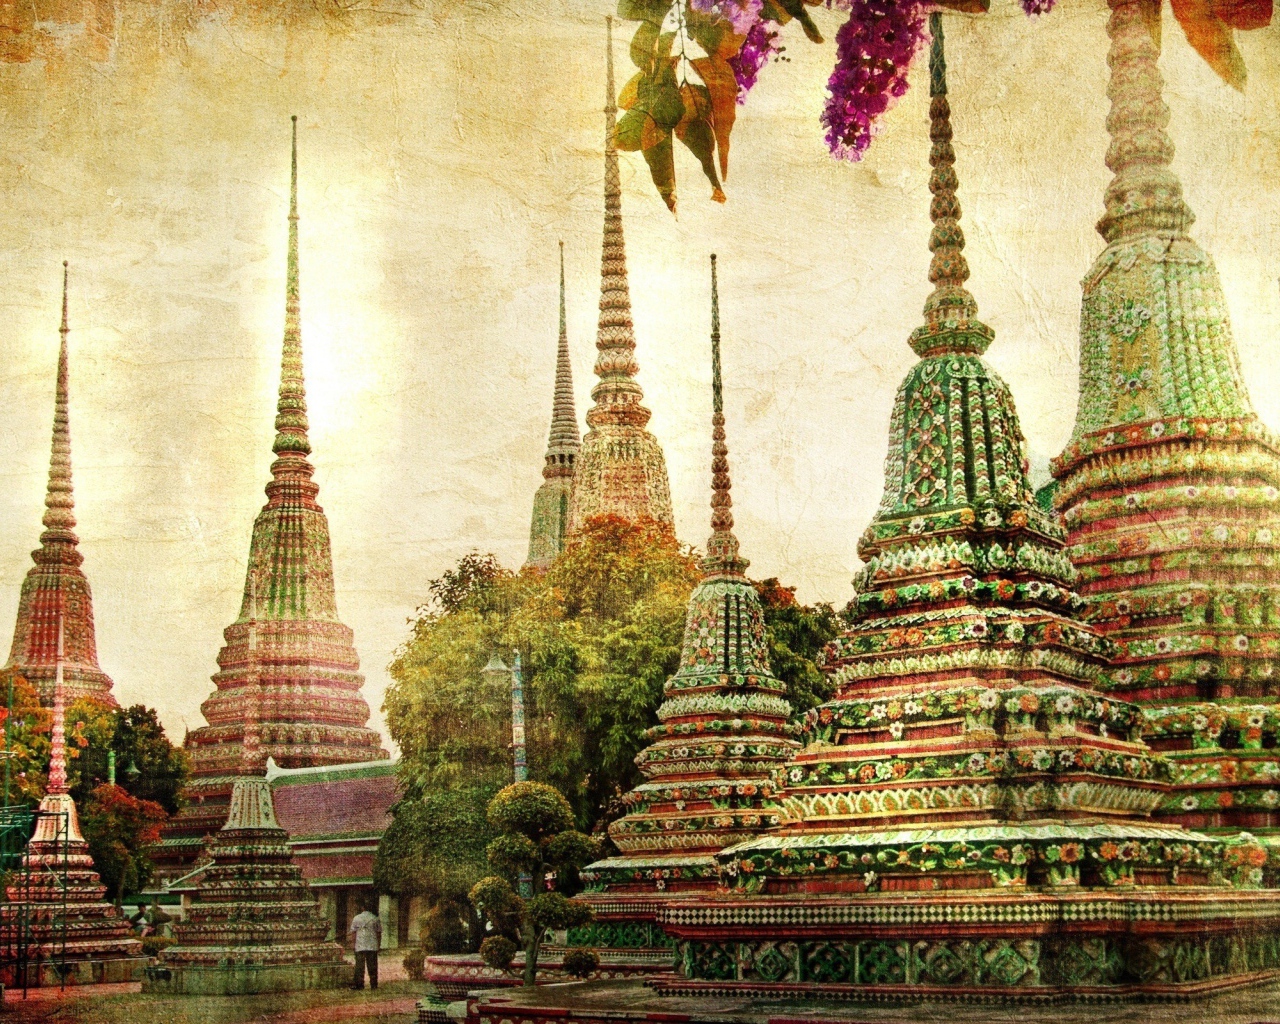 Храмы в цветах в Бангкоке, Таиланд